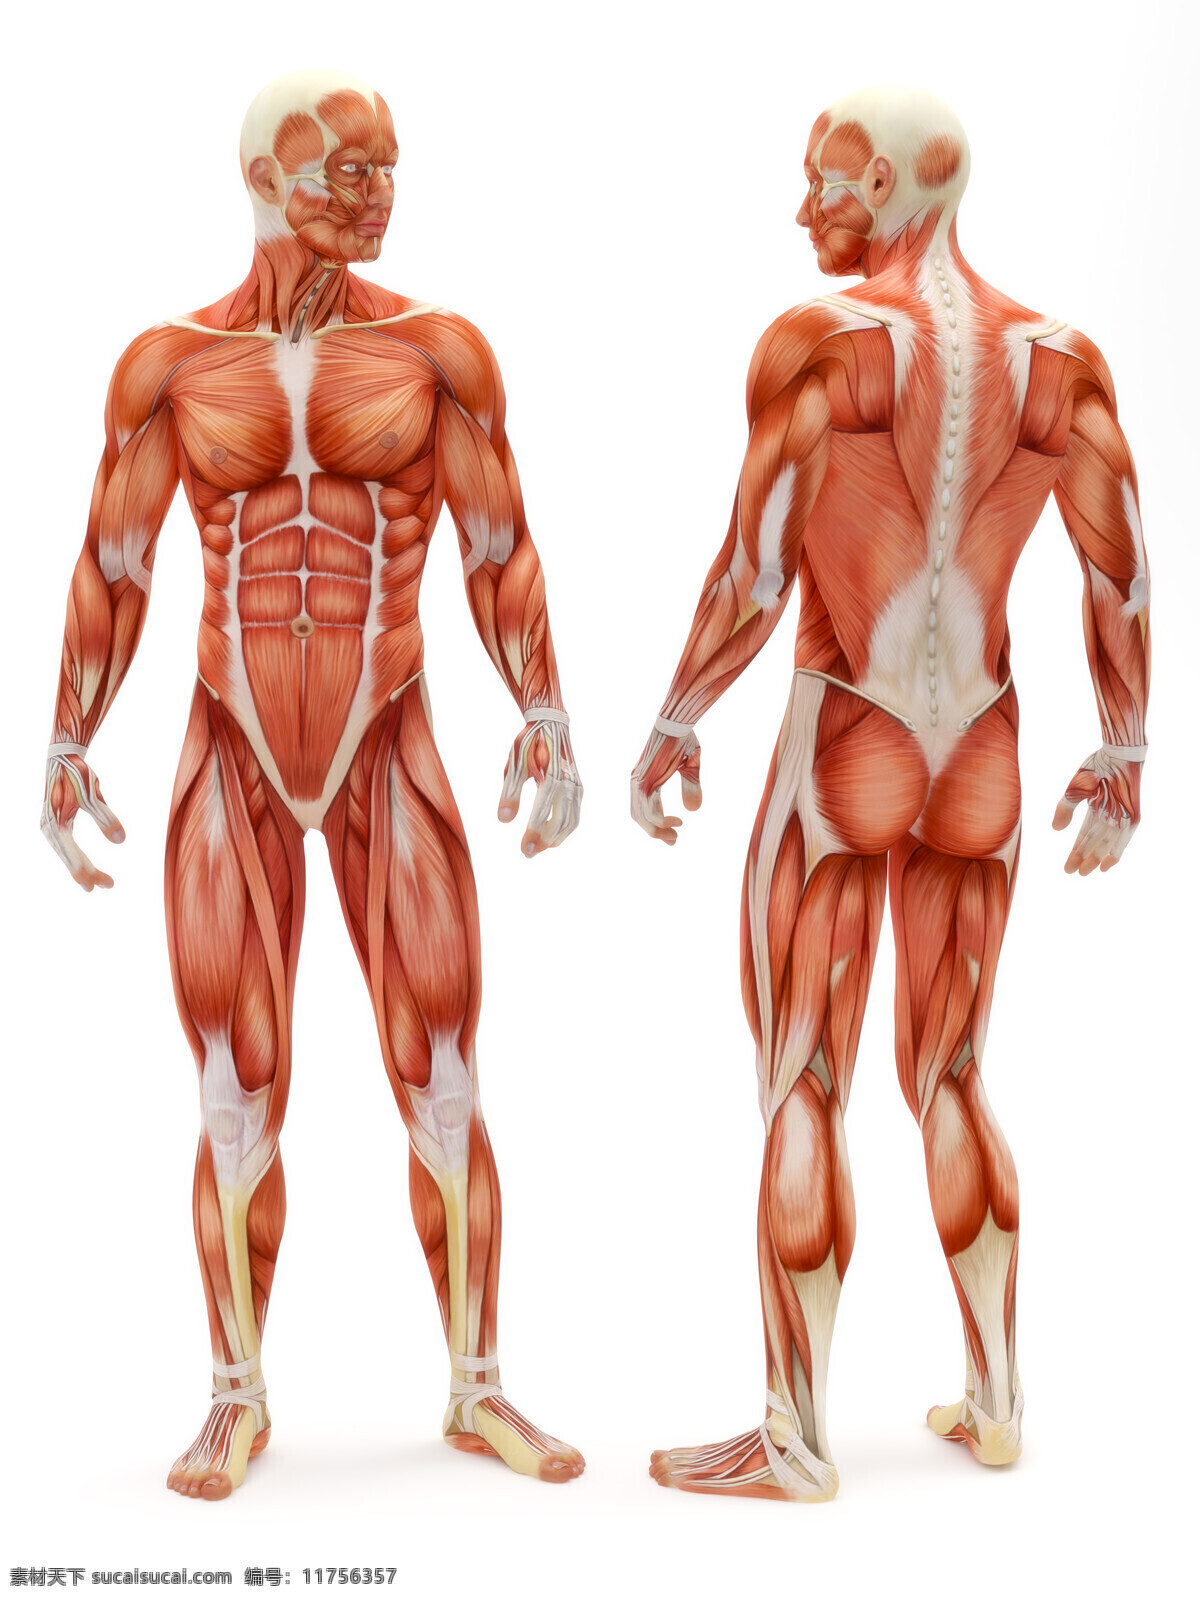 男性人体 人体肌肉 肌肉 人体结构 人体解刨 西医 医院 人体构造 皮下肌肉 医学 人体工学 女性肌肉 女性器官 肌肉分布 肌肉结构 人体研究 生命科技 立体人体 三维人体 人物图库 男性男人